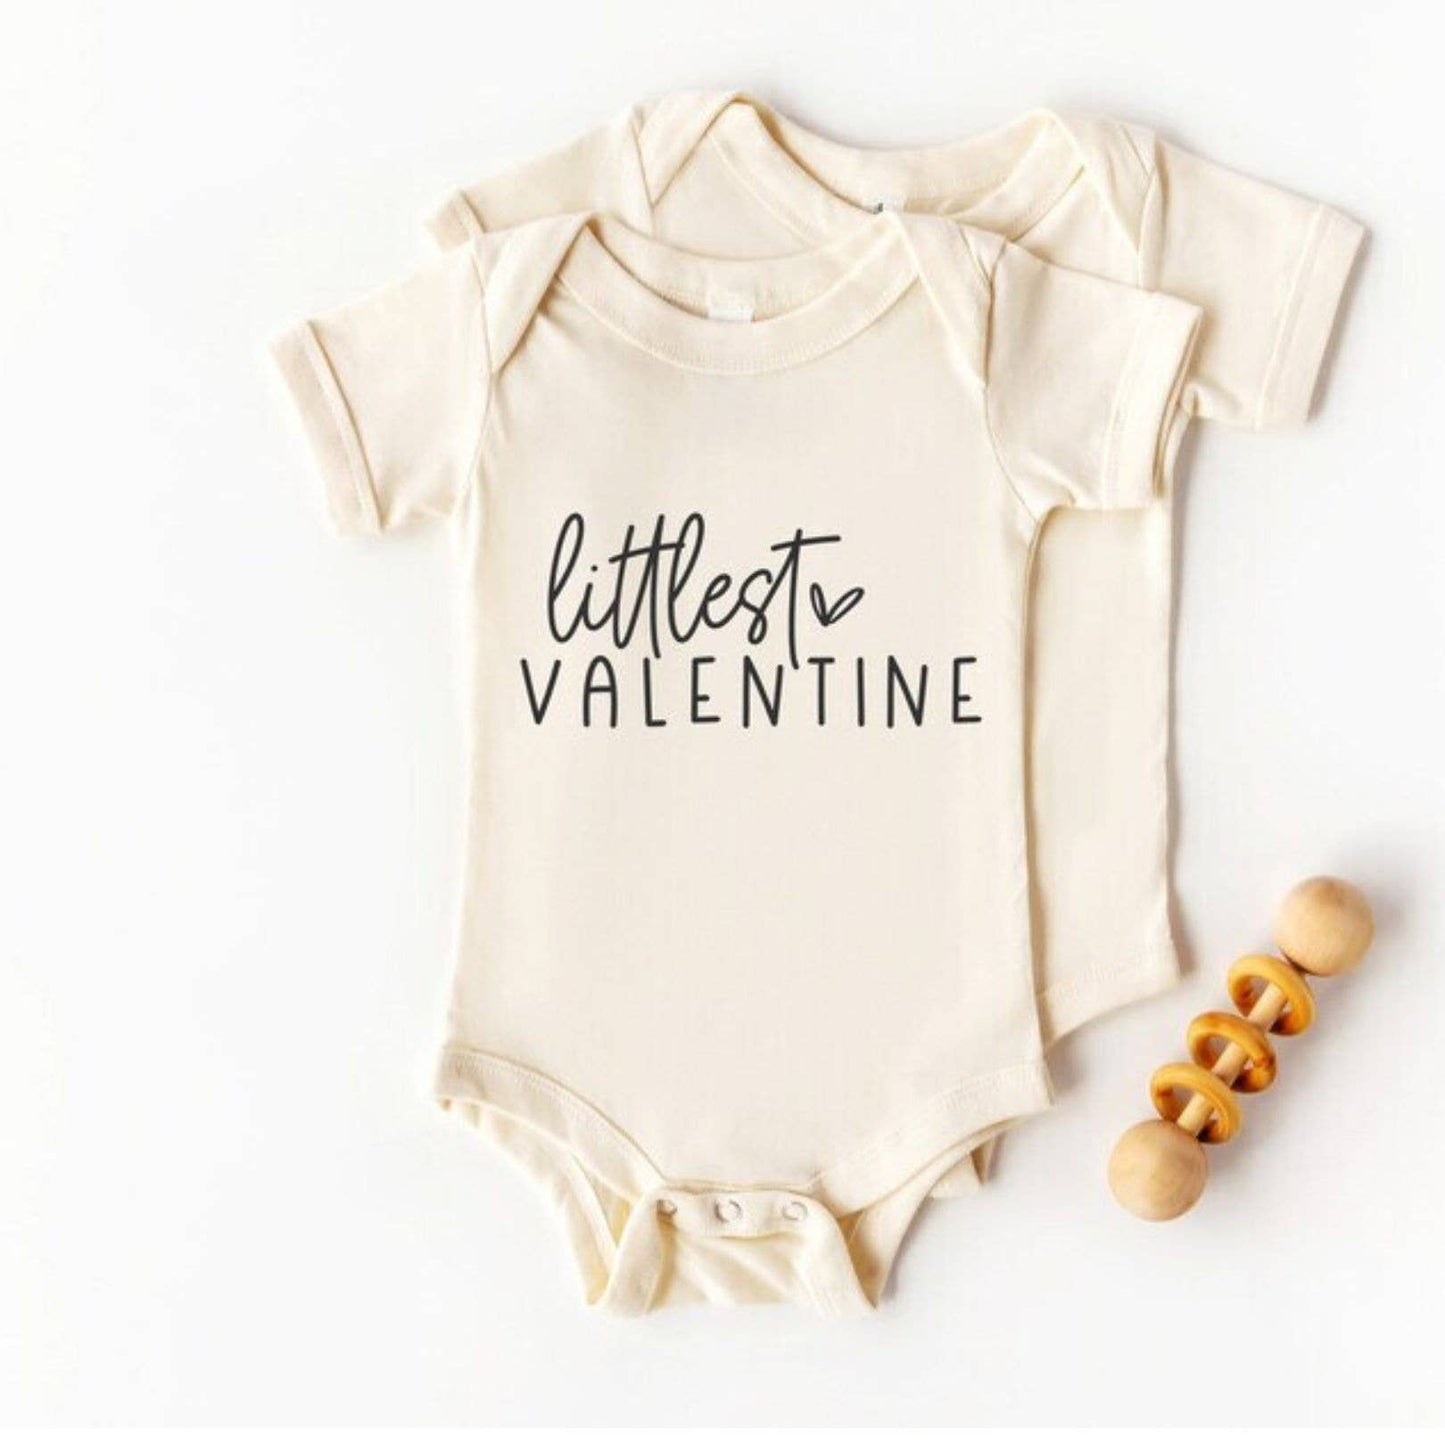 Littlest Valentine Baby Bodysuit